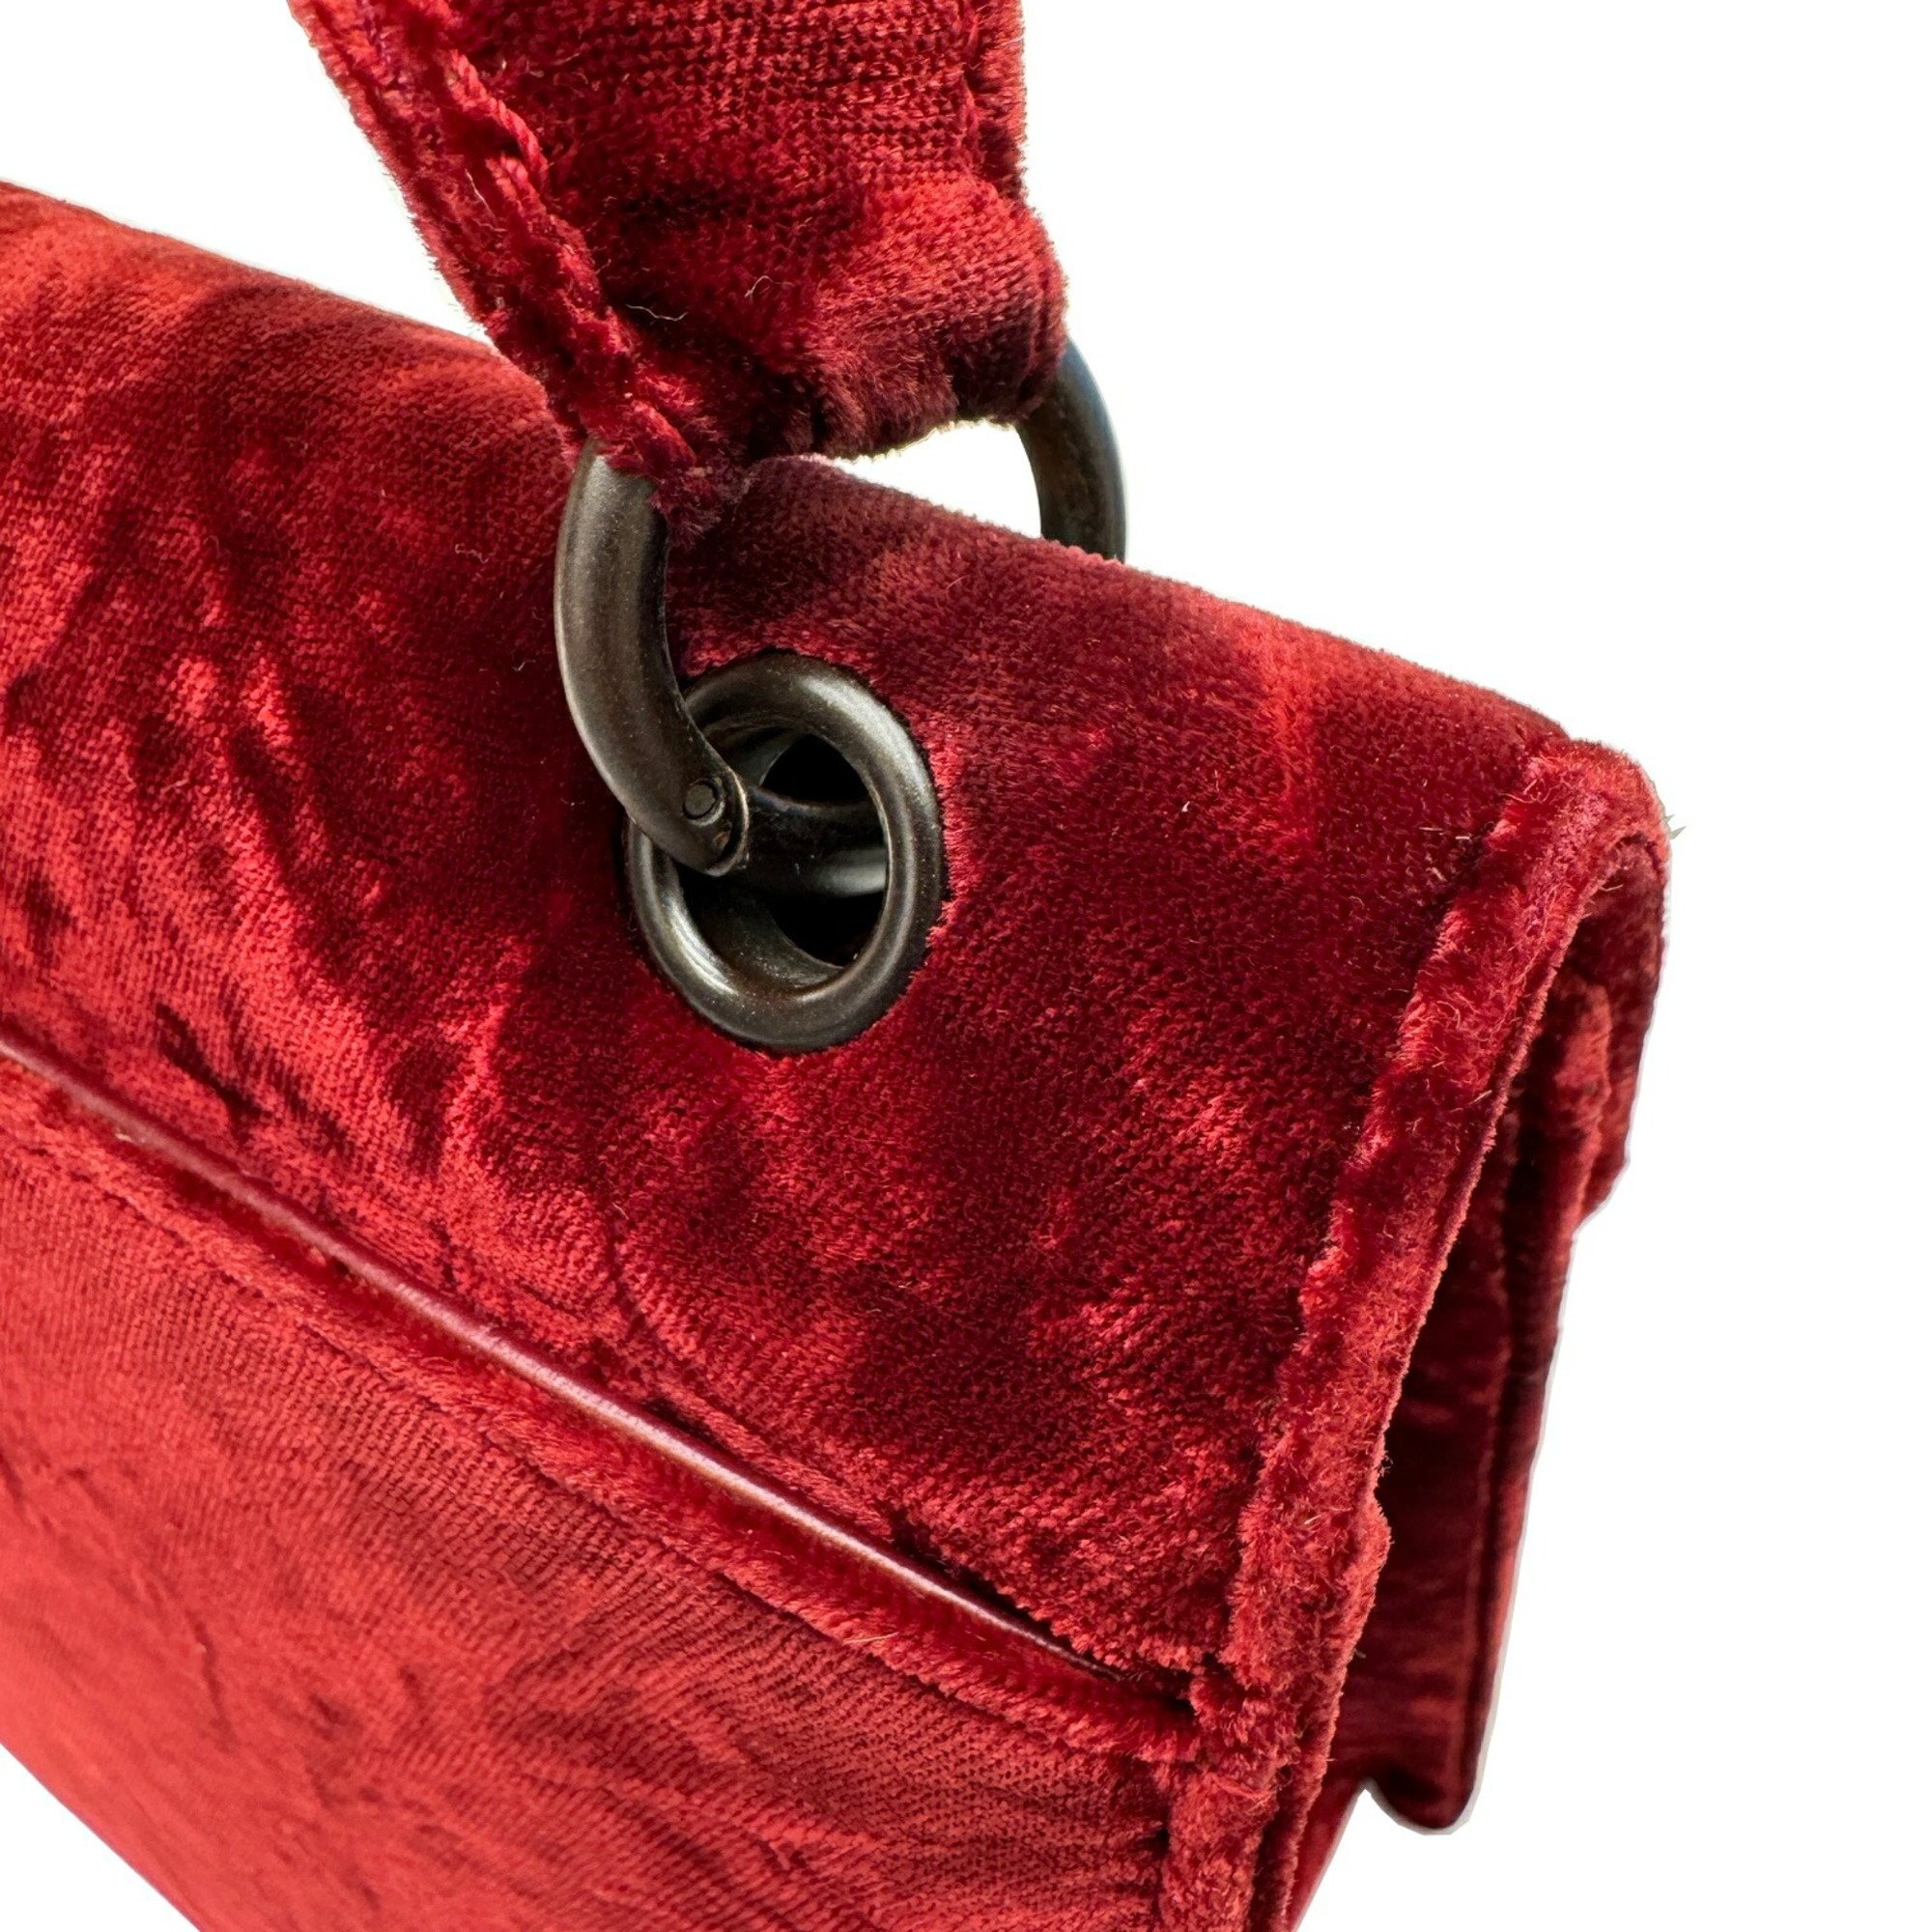 CHANEL Coco Mark Handbag Shoulder Bag Velour Black Hardware 5th Series Wine Red Velvet Women's